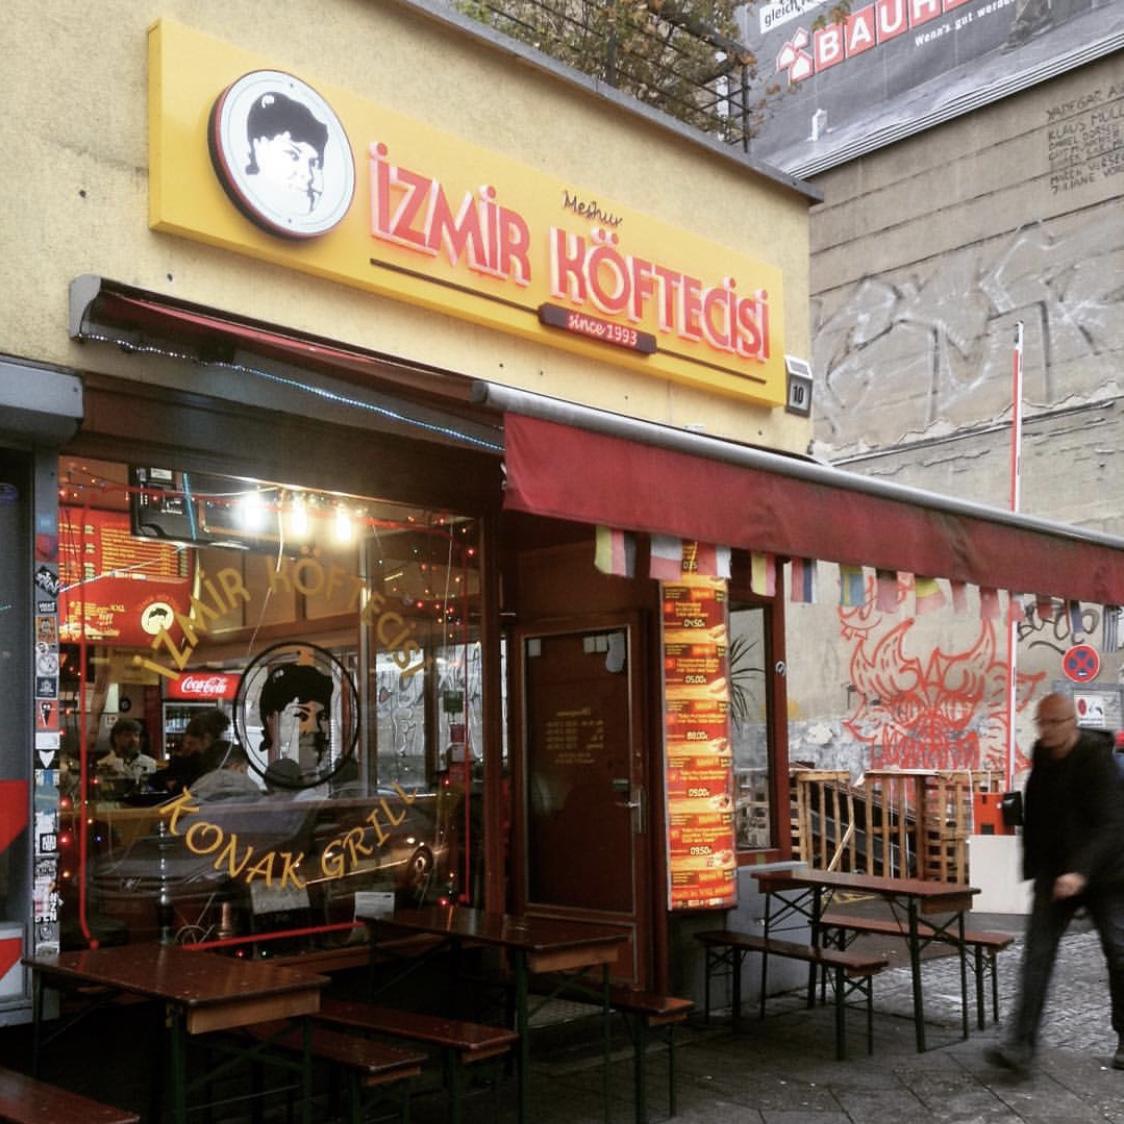 Restaurant "Izmir Köftecisi (Konak-Grill)" in Berlin